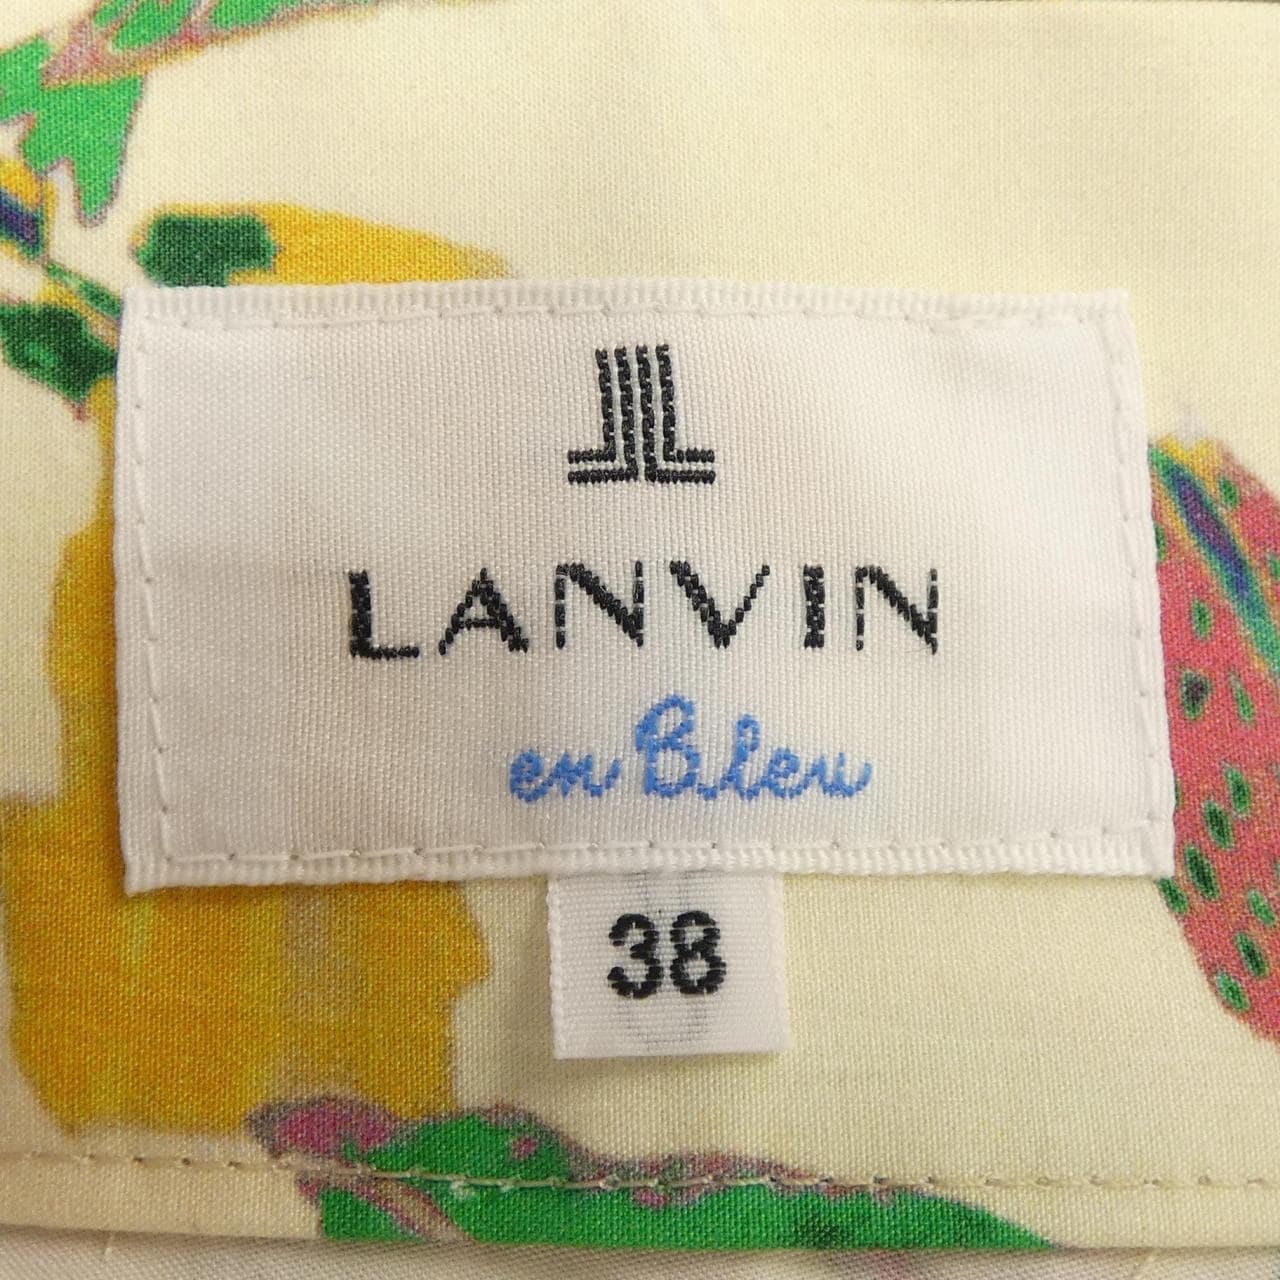 ランバンオンブルー LANVIN en Bleu スカート